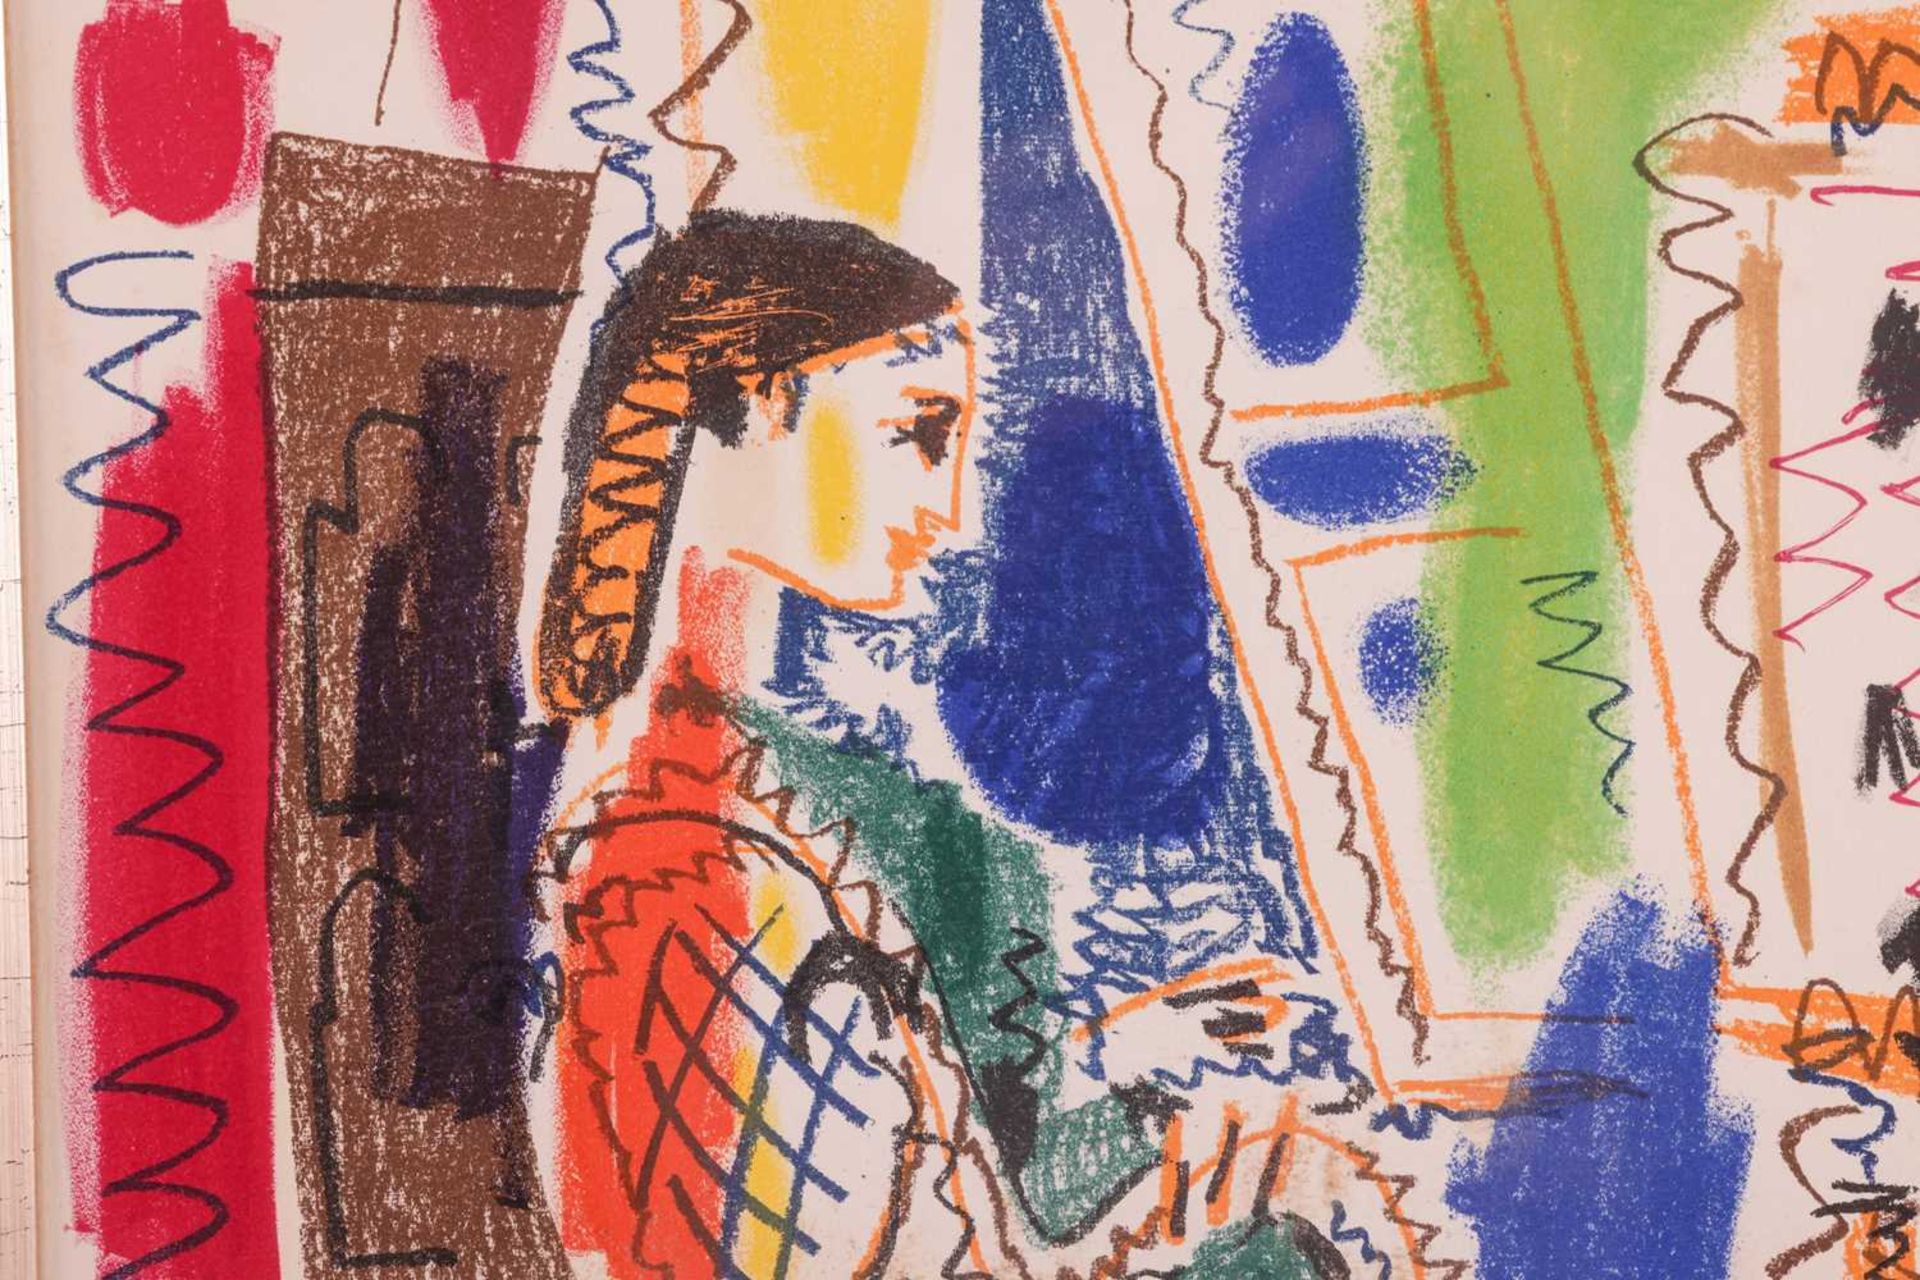 After Pablo Picasso (Spanish, 1881 - 1973), L'Atelier de Cannes (1958), colour lithograph, 43 x 30 c - Image 6 of 17